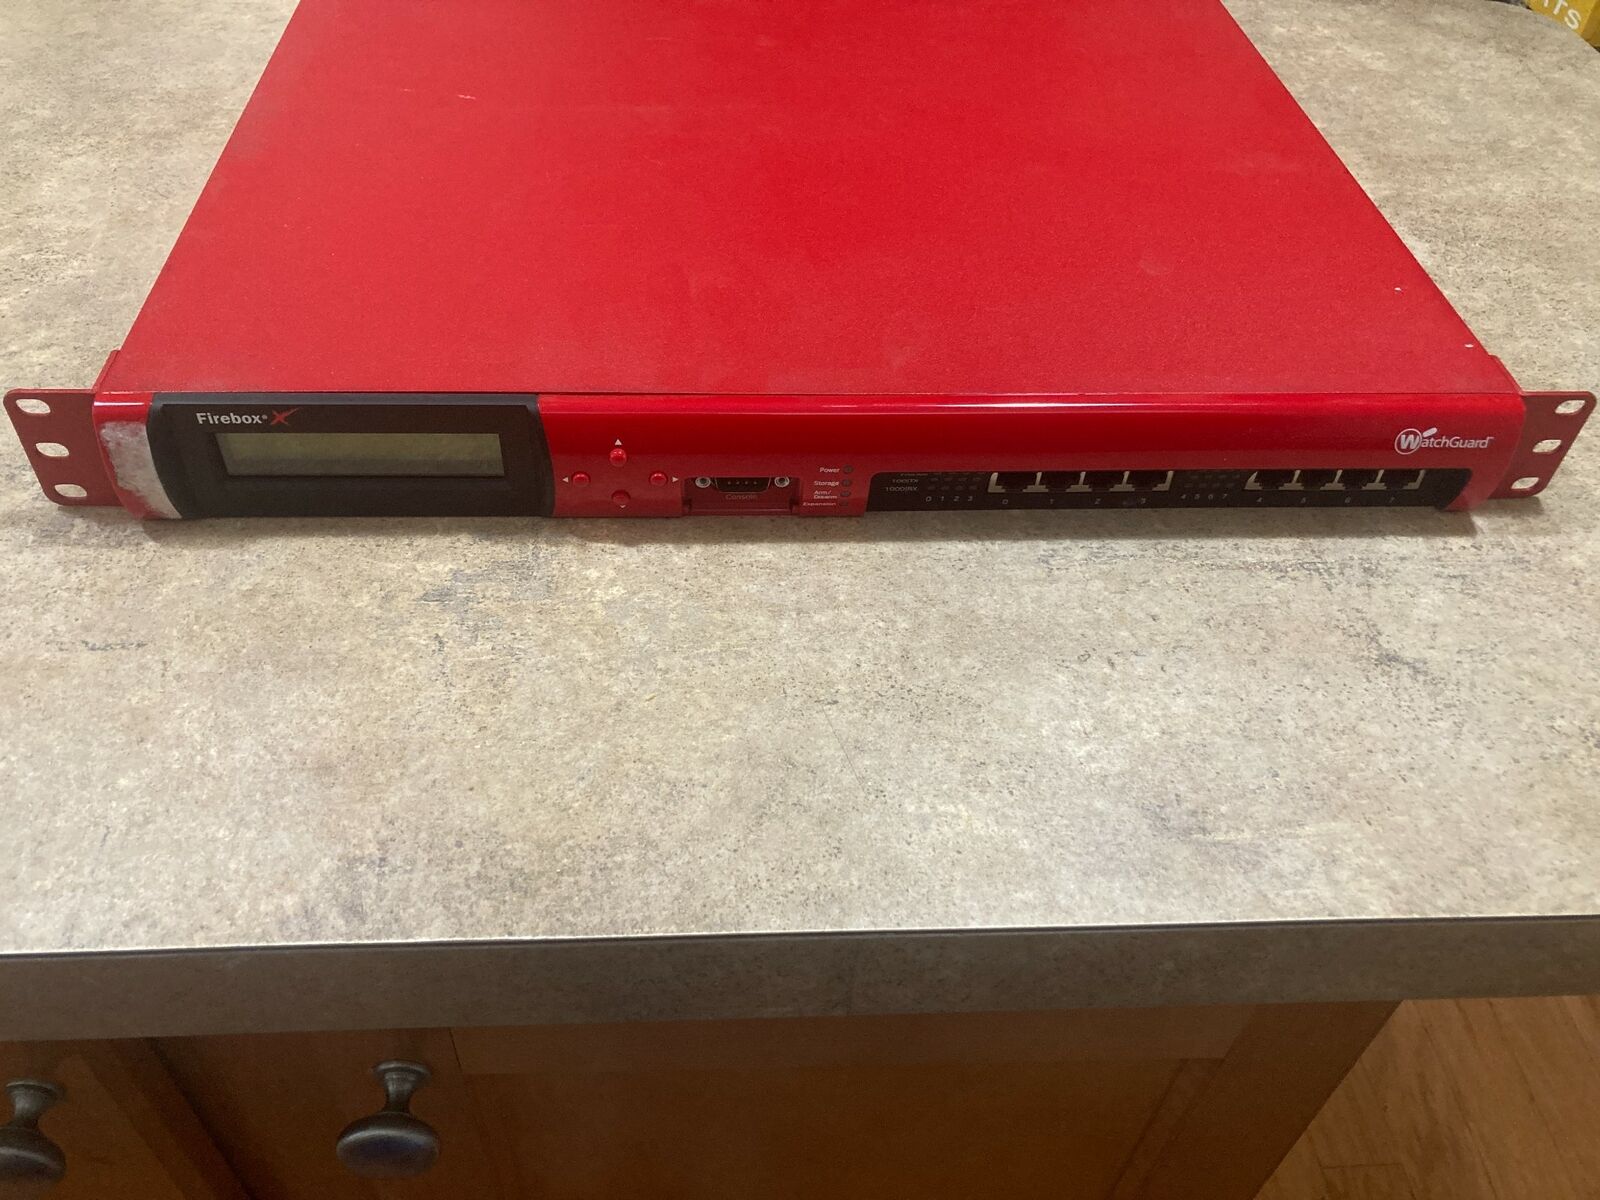 WatchGuard Firebox X1250e CoreT1AE8 Firewall Network Security Appliance 8-Port 5